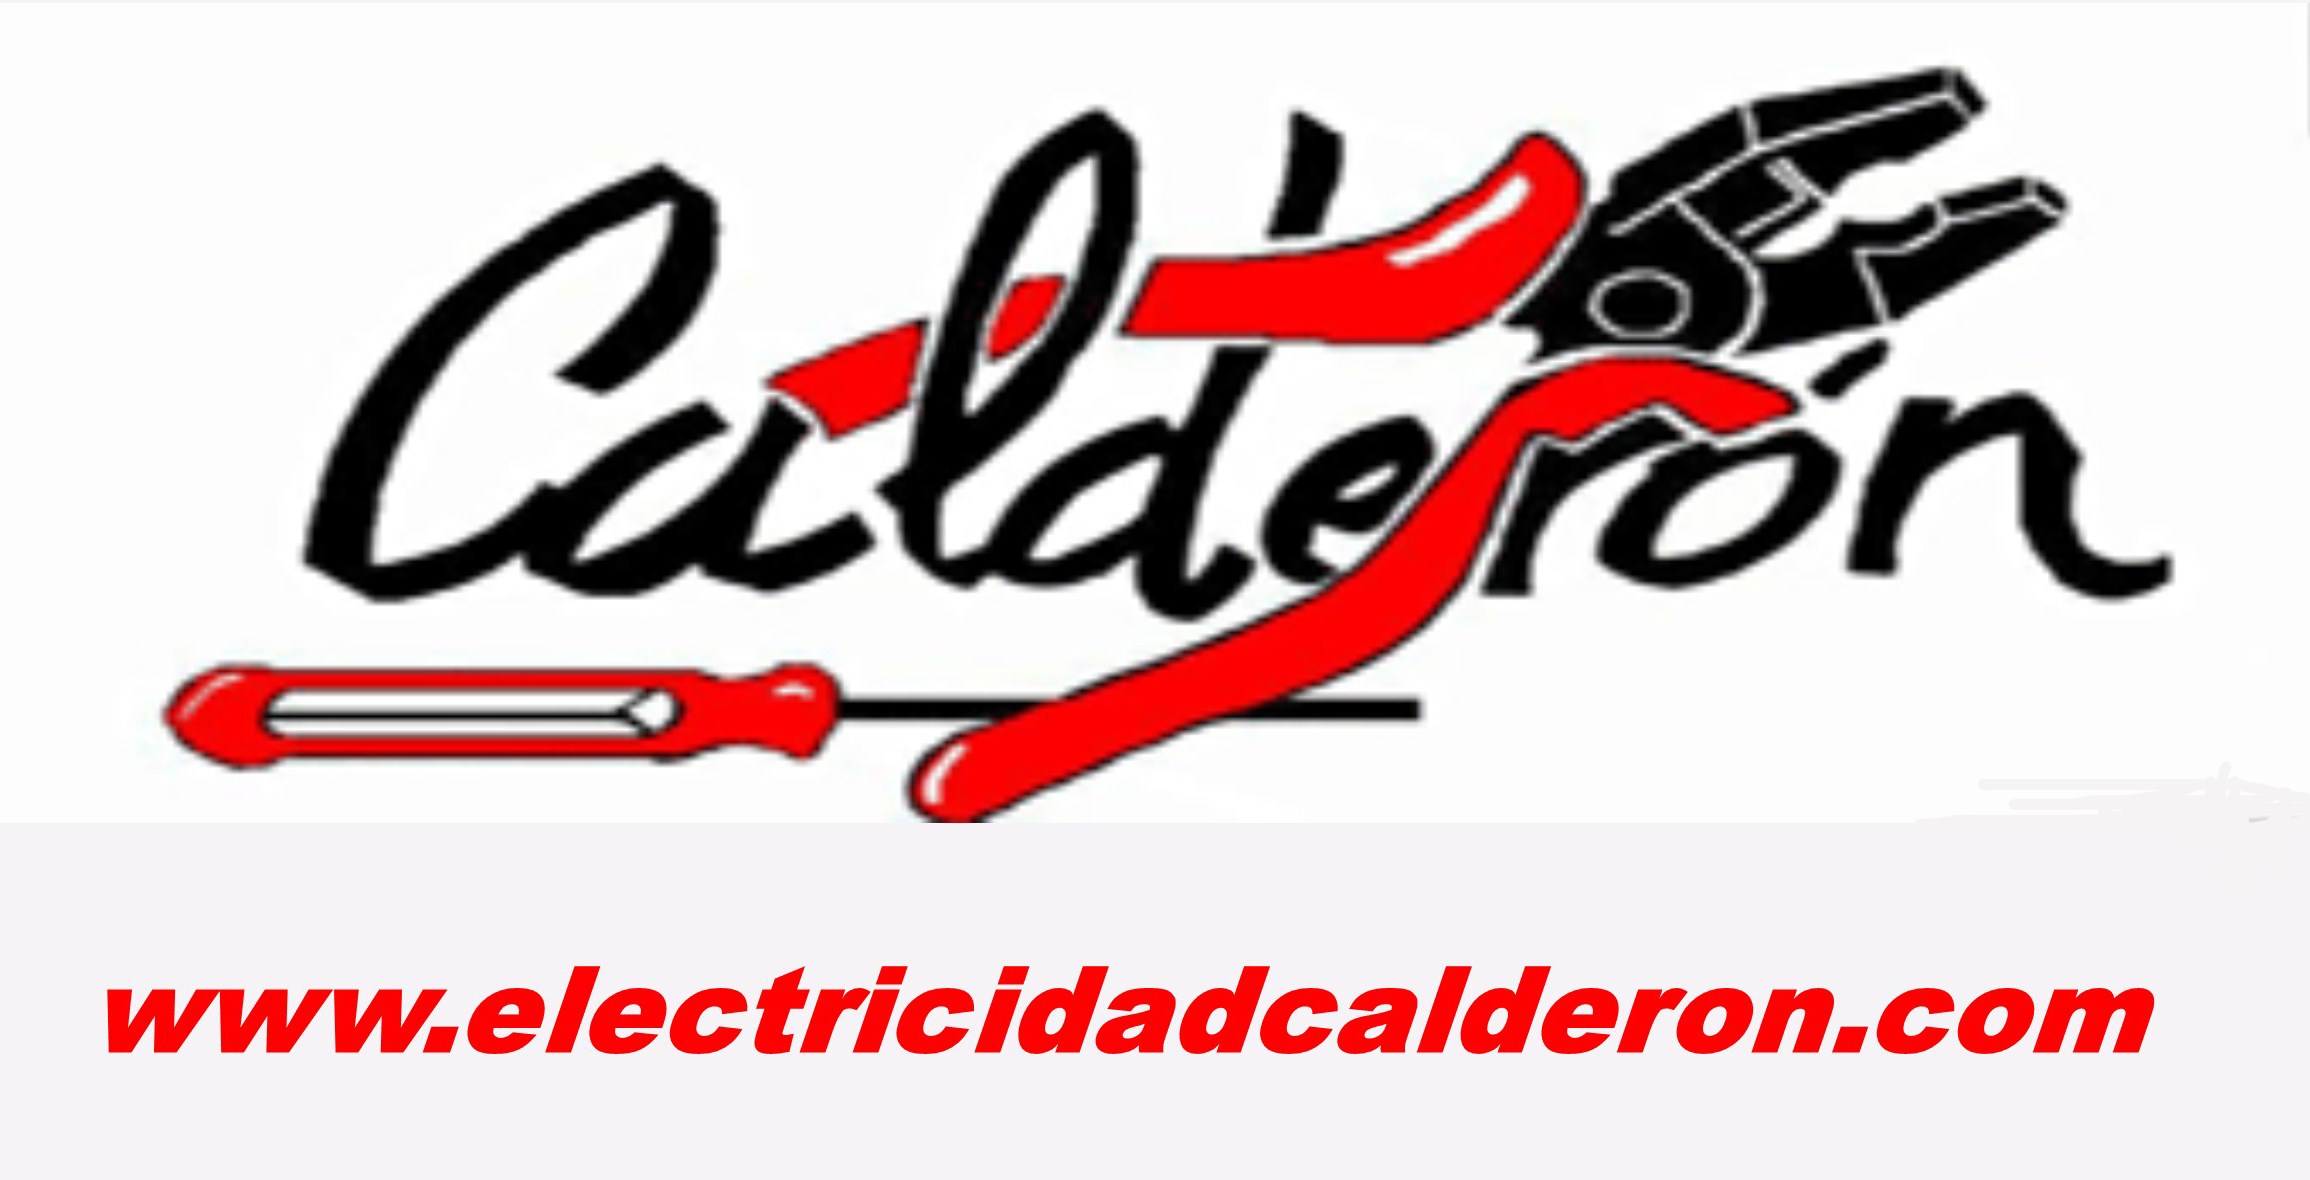 ELECTRICIDAD1